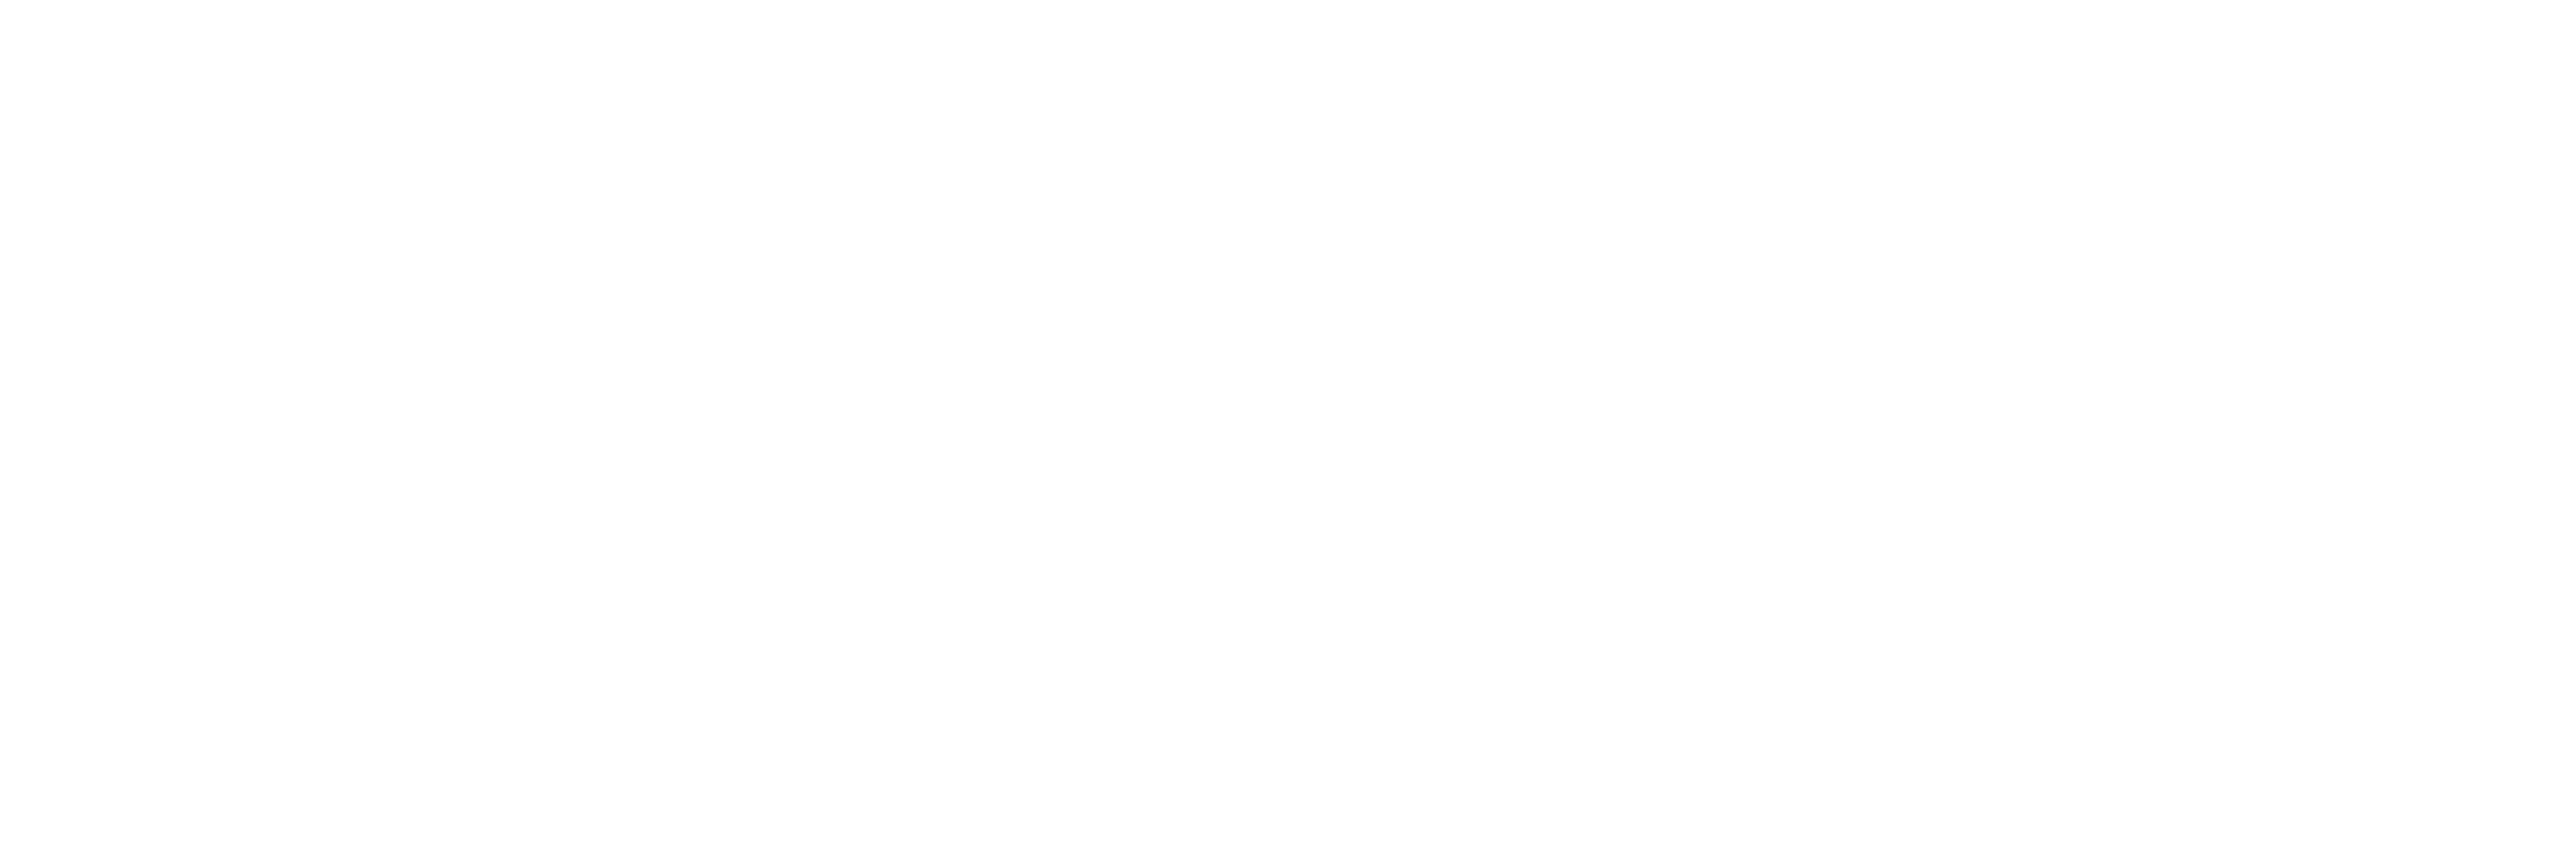 SSPN Prime